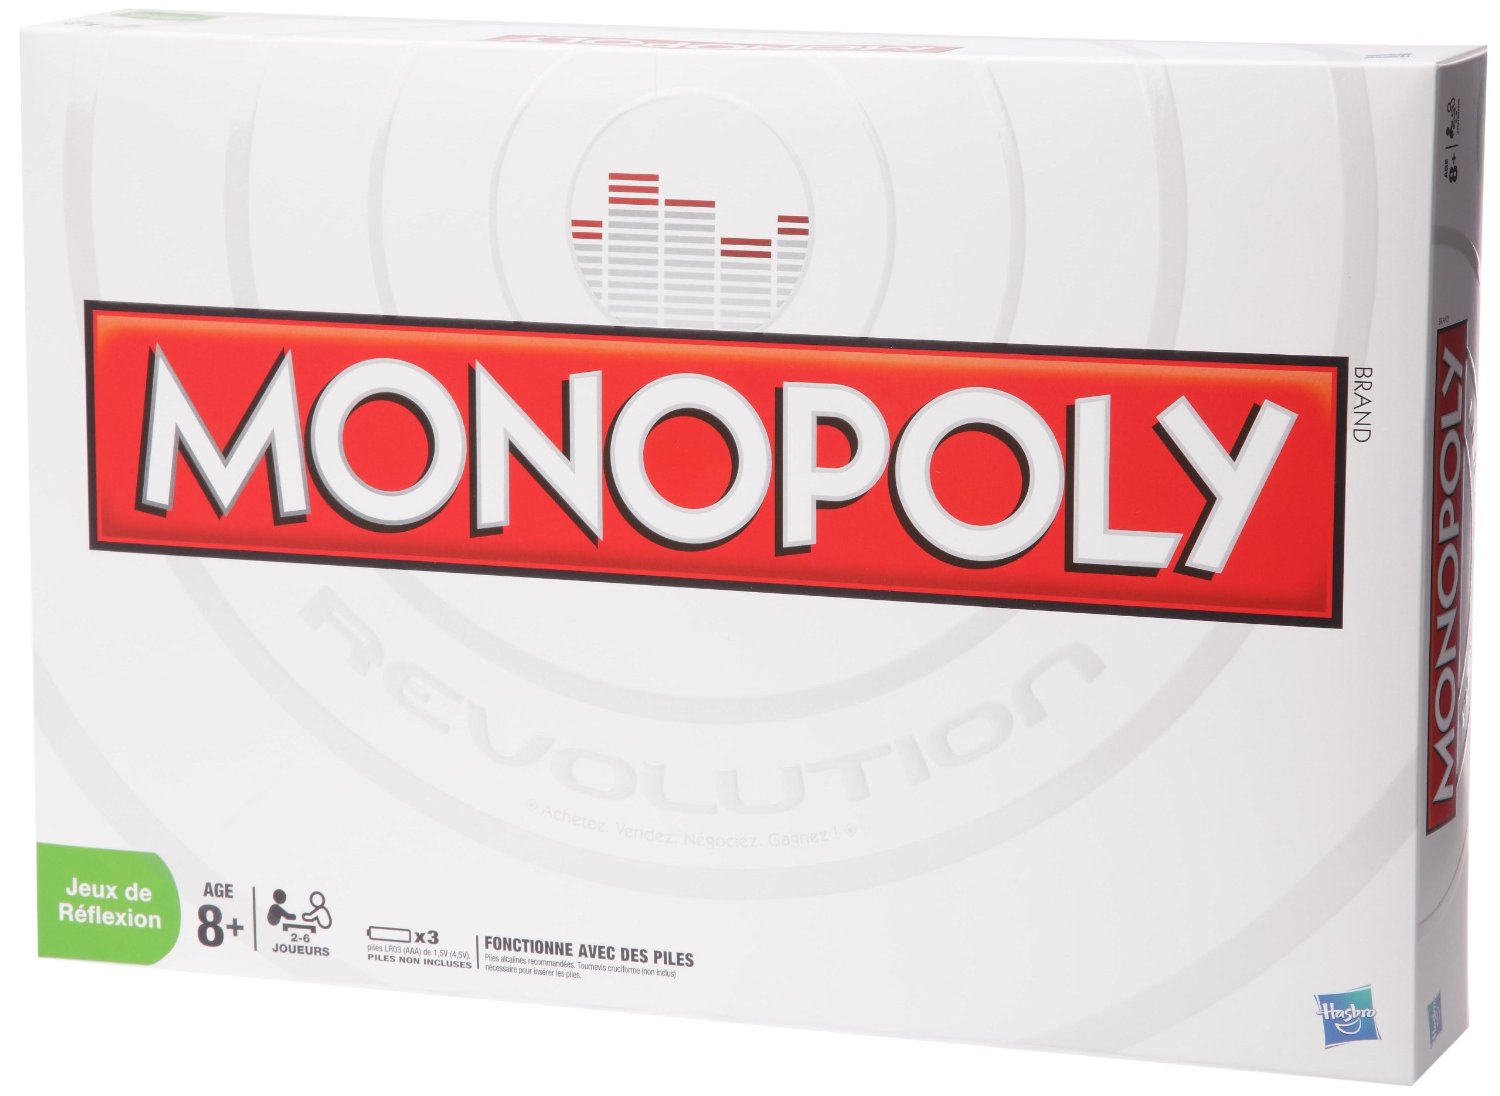 Boite du Monopoly Révolution